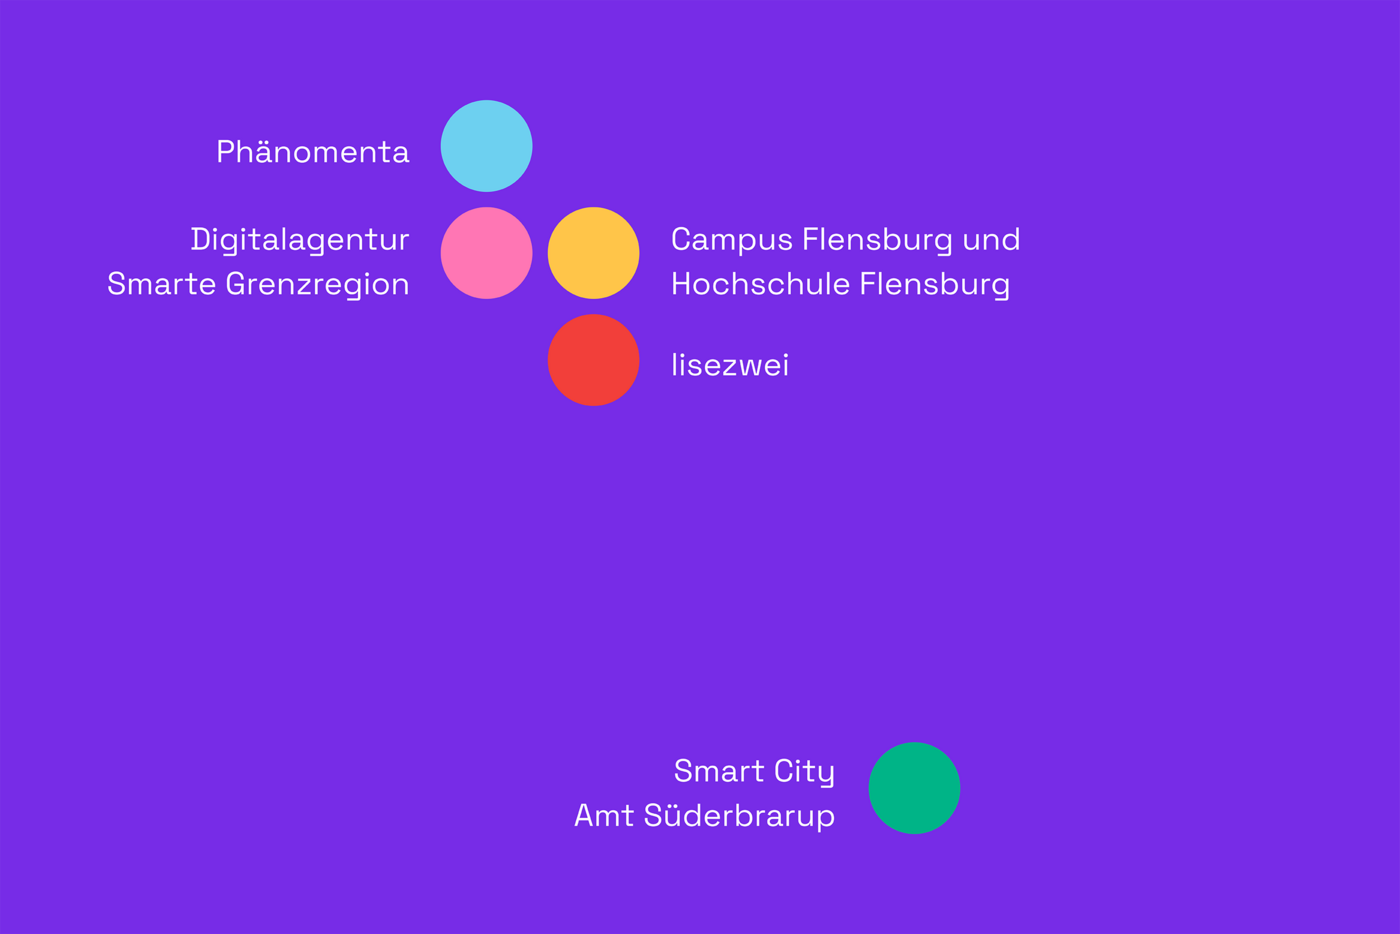 Eine Grafik zeigt auf violettem Hintergrund die Beteiligten am Projekt nordisch.digital in Form von bunten Punkten und Text.